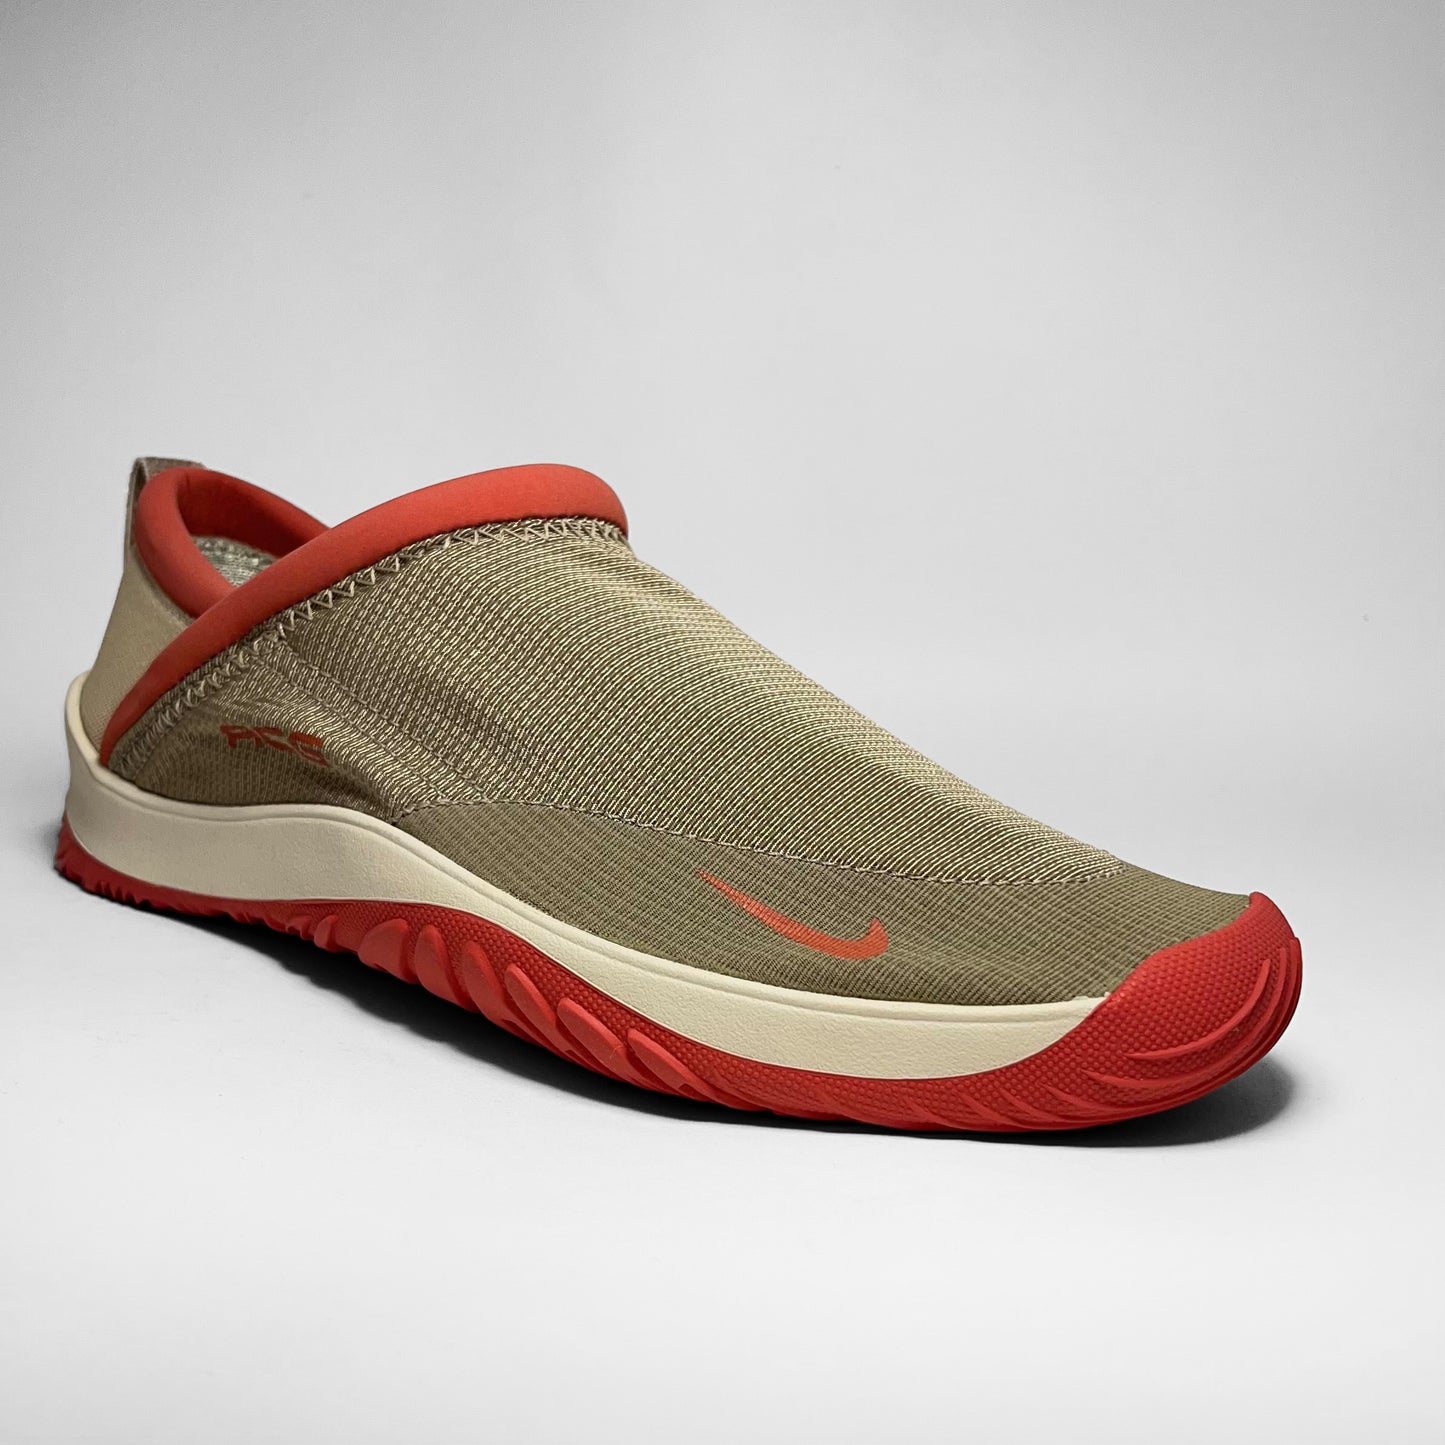 Nike Aqua Sock IV ‘Pueblo Red’ (2002)